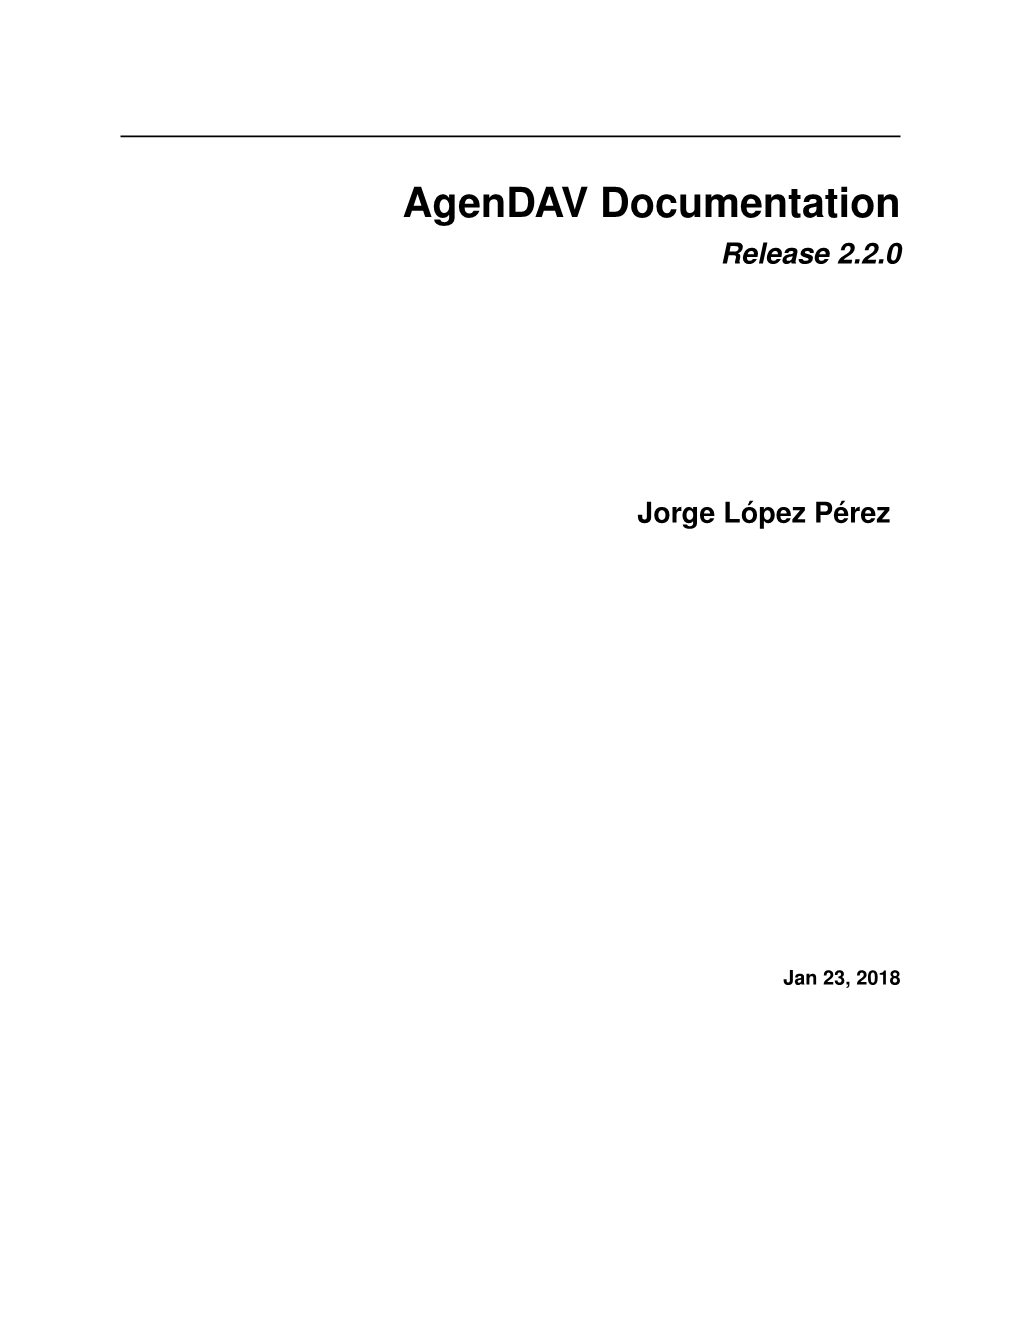 Agendav Documentation Release 2.2.0